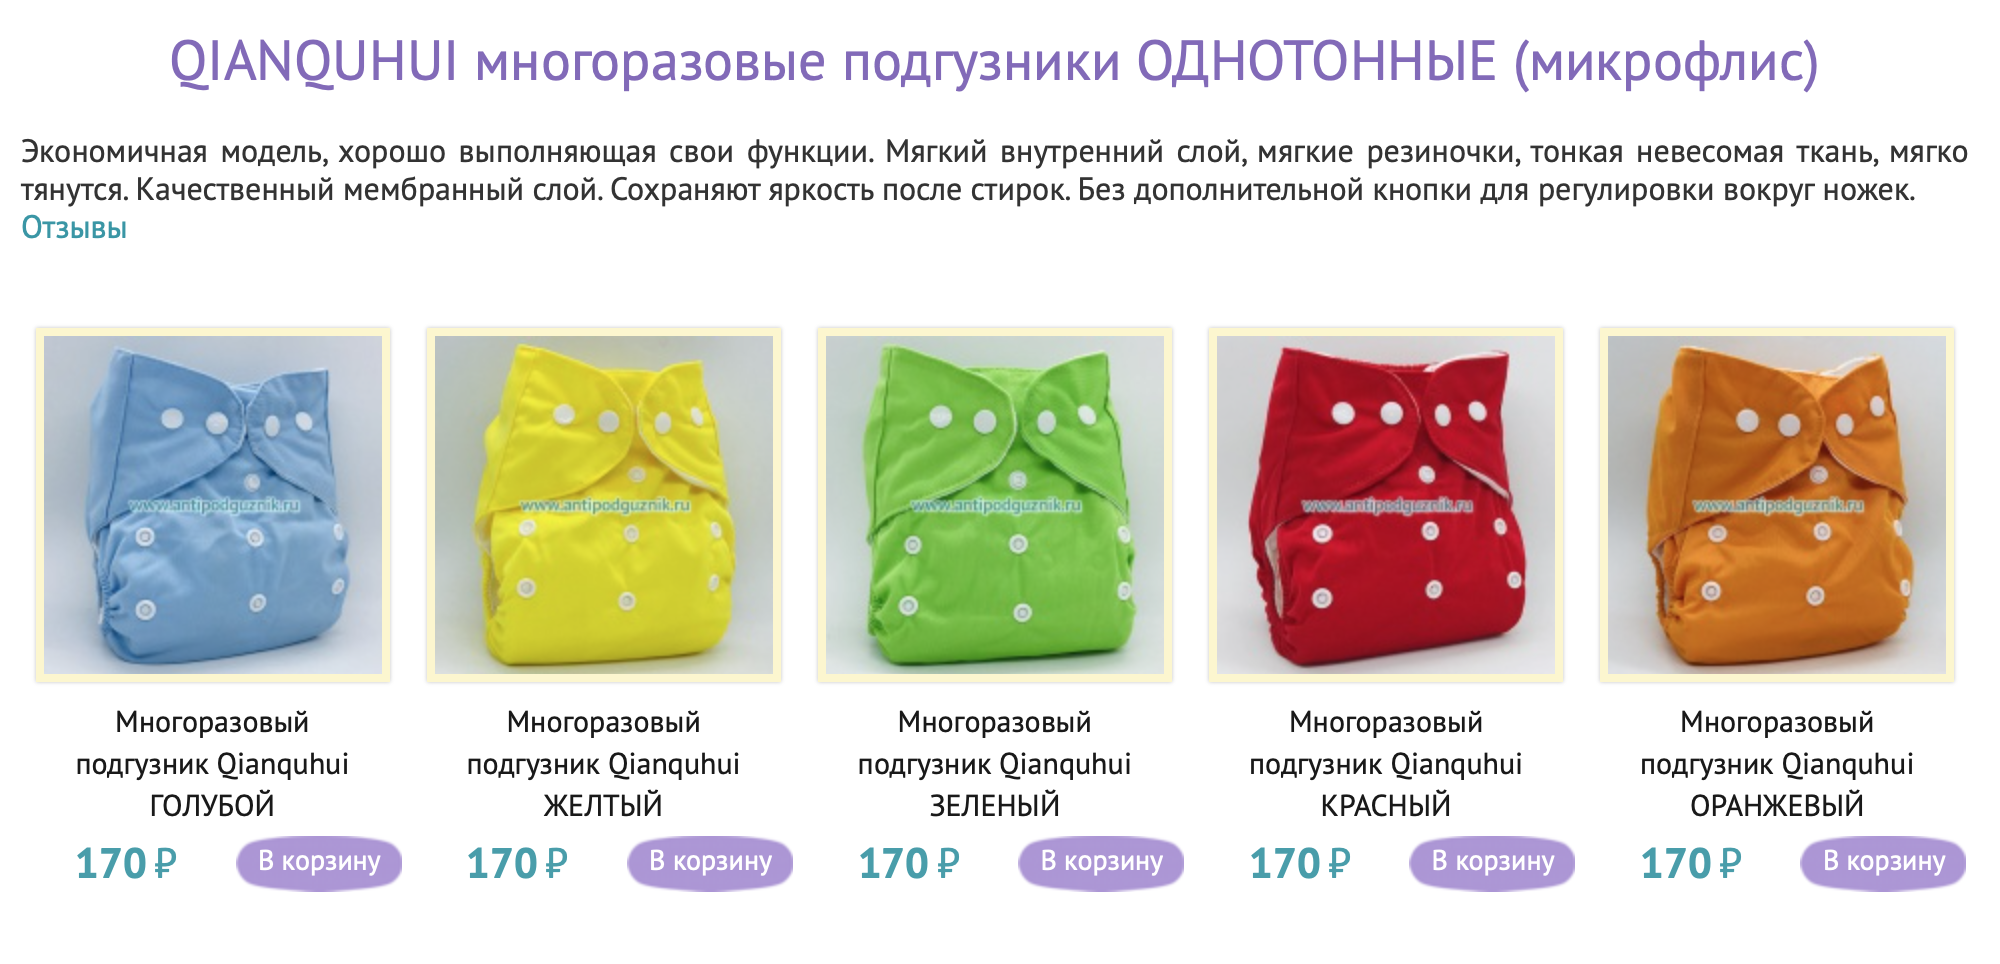 Купить подгузники c доставкой на дом в интернет-магазине «Palladi» в Южно-Сахалинске